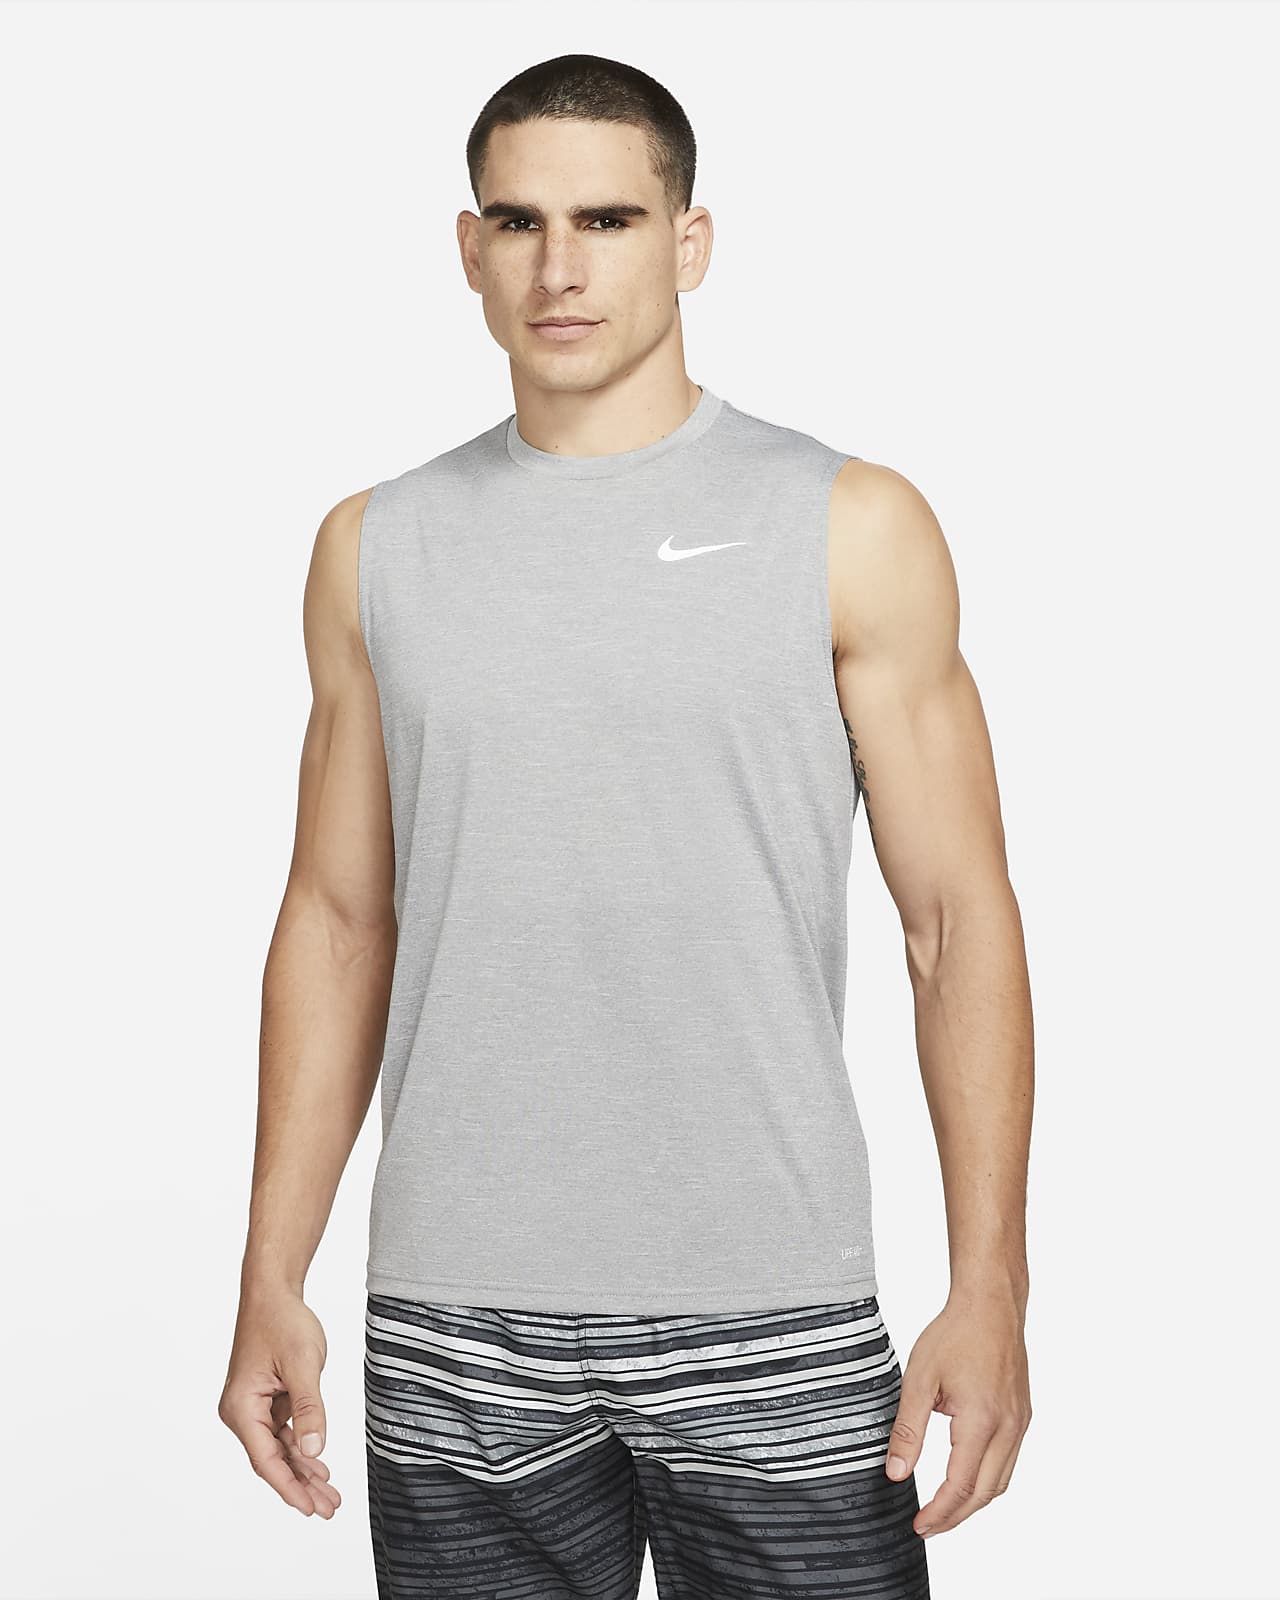 Indomable artillería Desventaja Camiseta Hydroguard de natación sin mangas de tela jaspeada para hombre Nike.  Nike.com